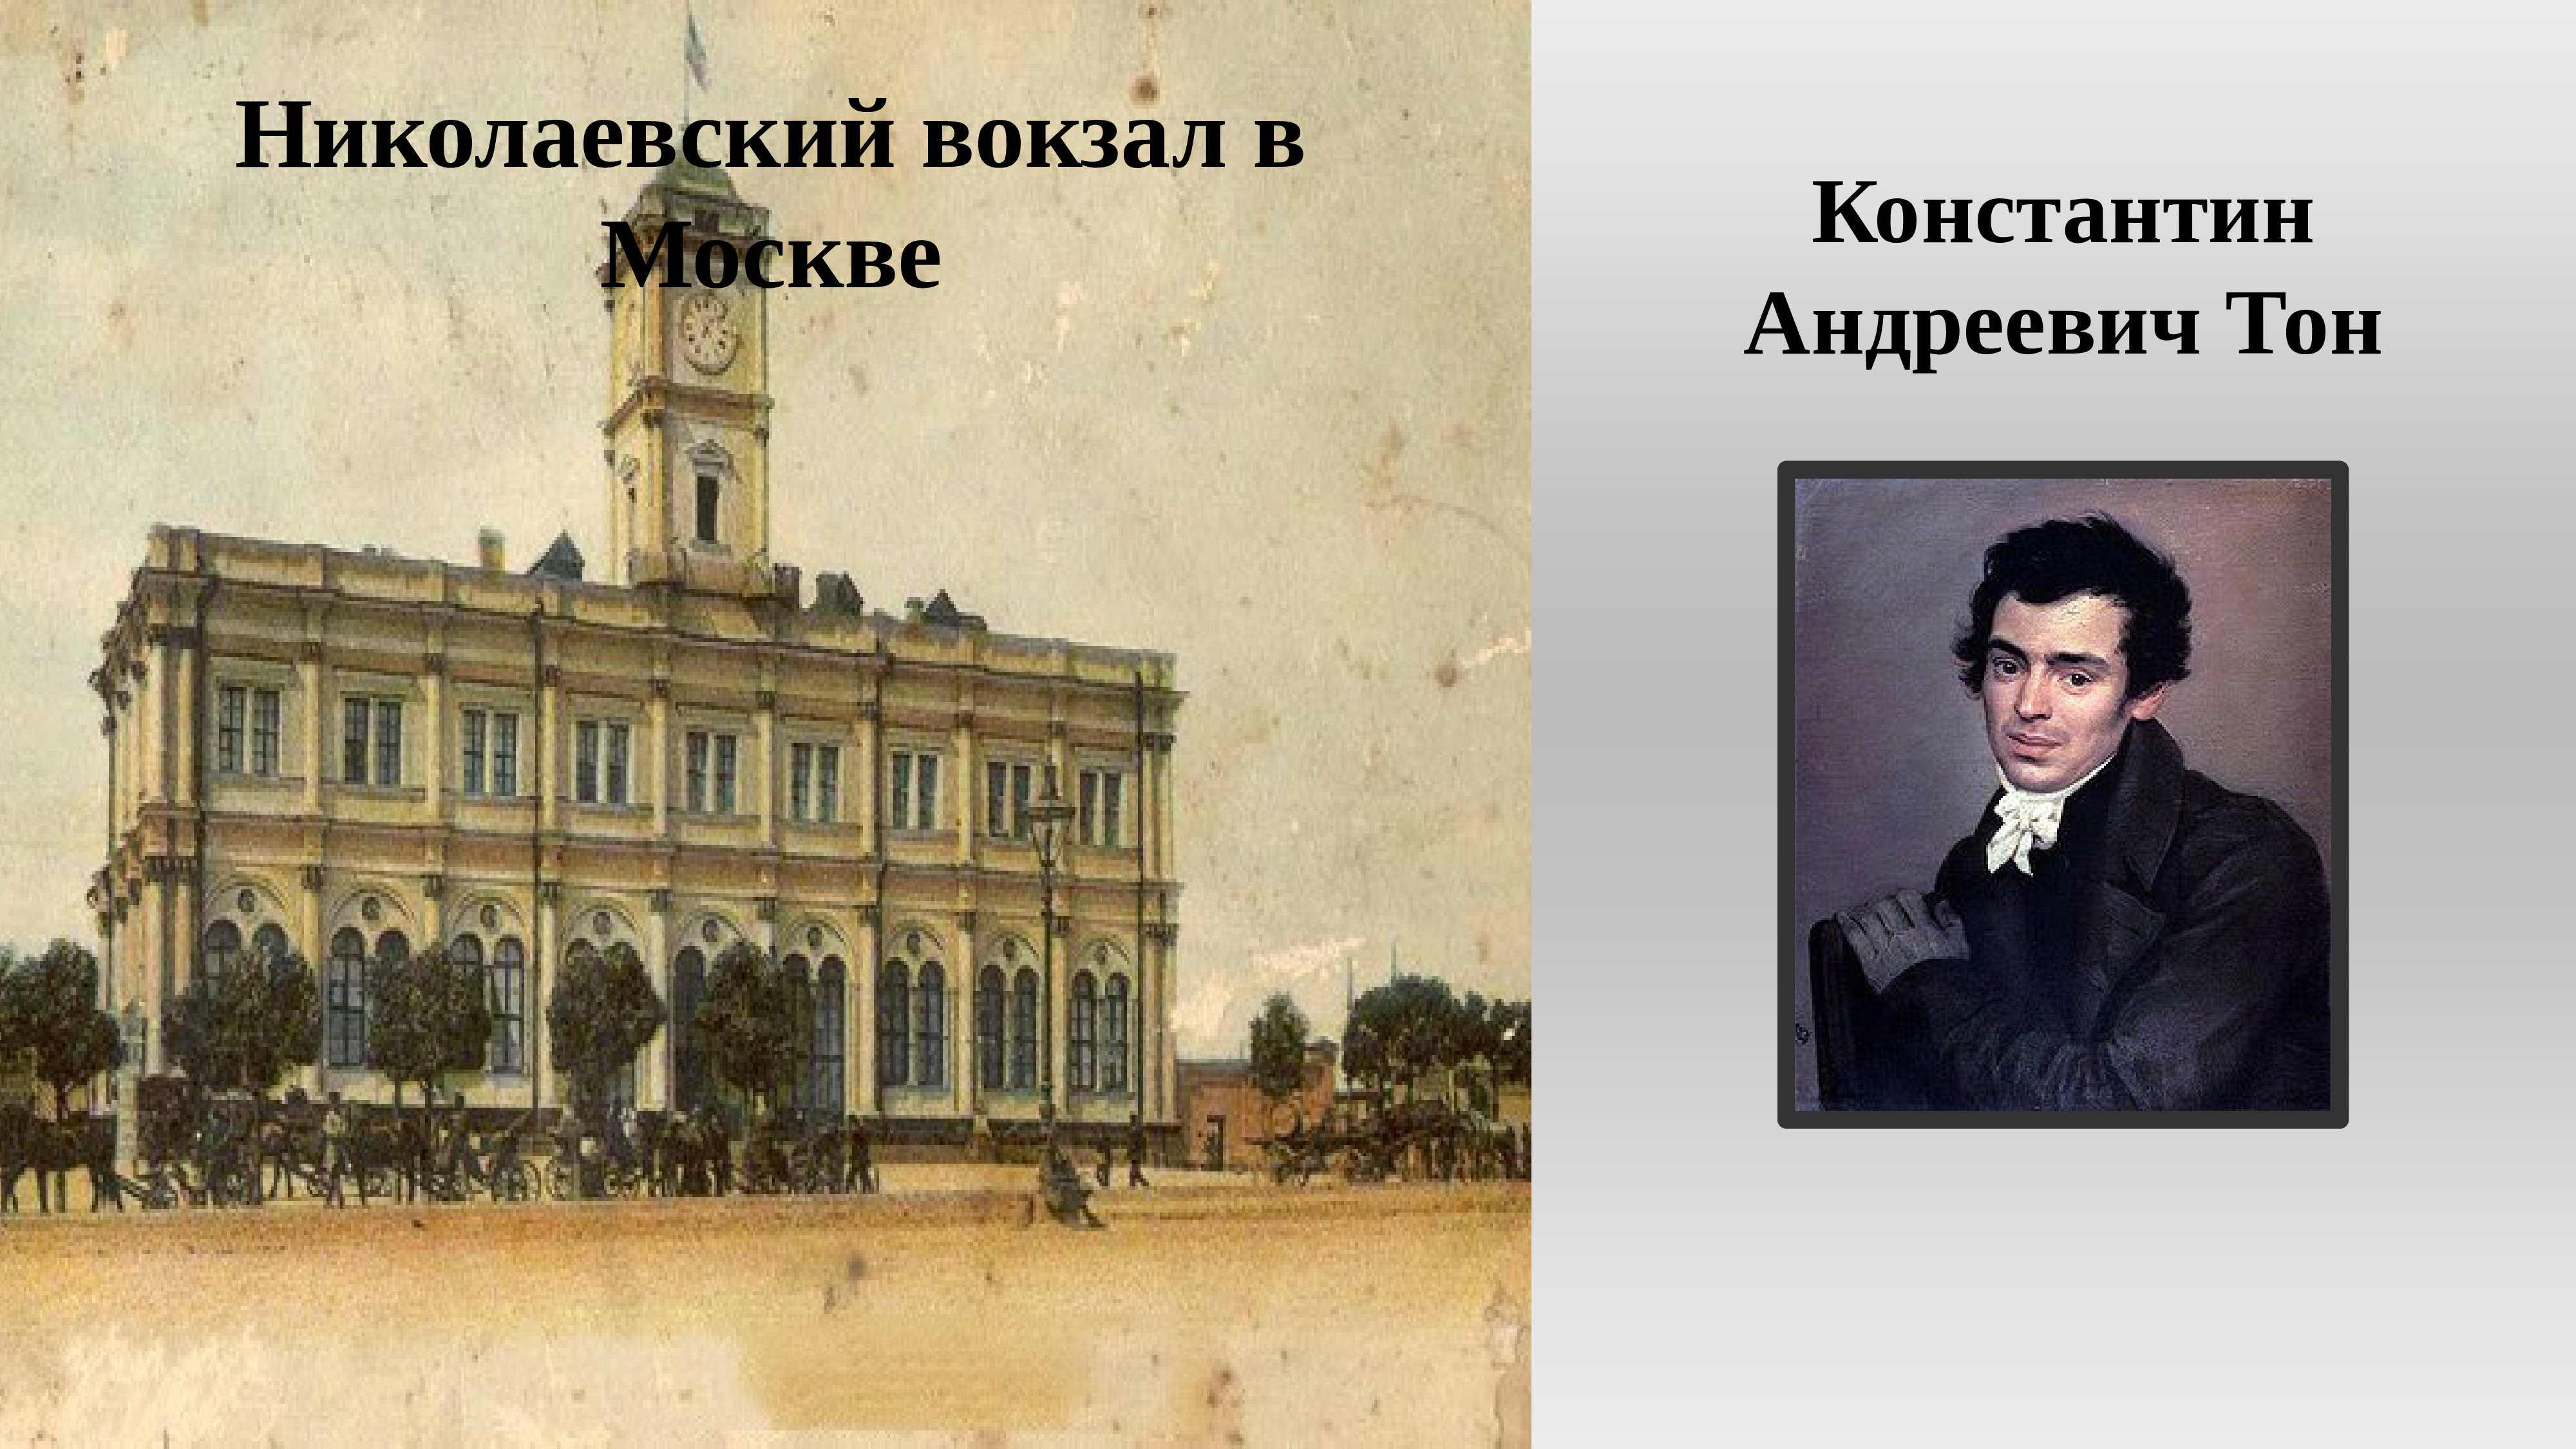 Константин Андреевич тон Николаевский вокзал